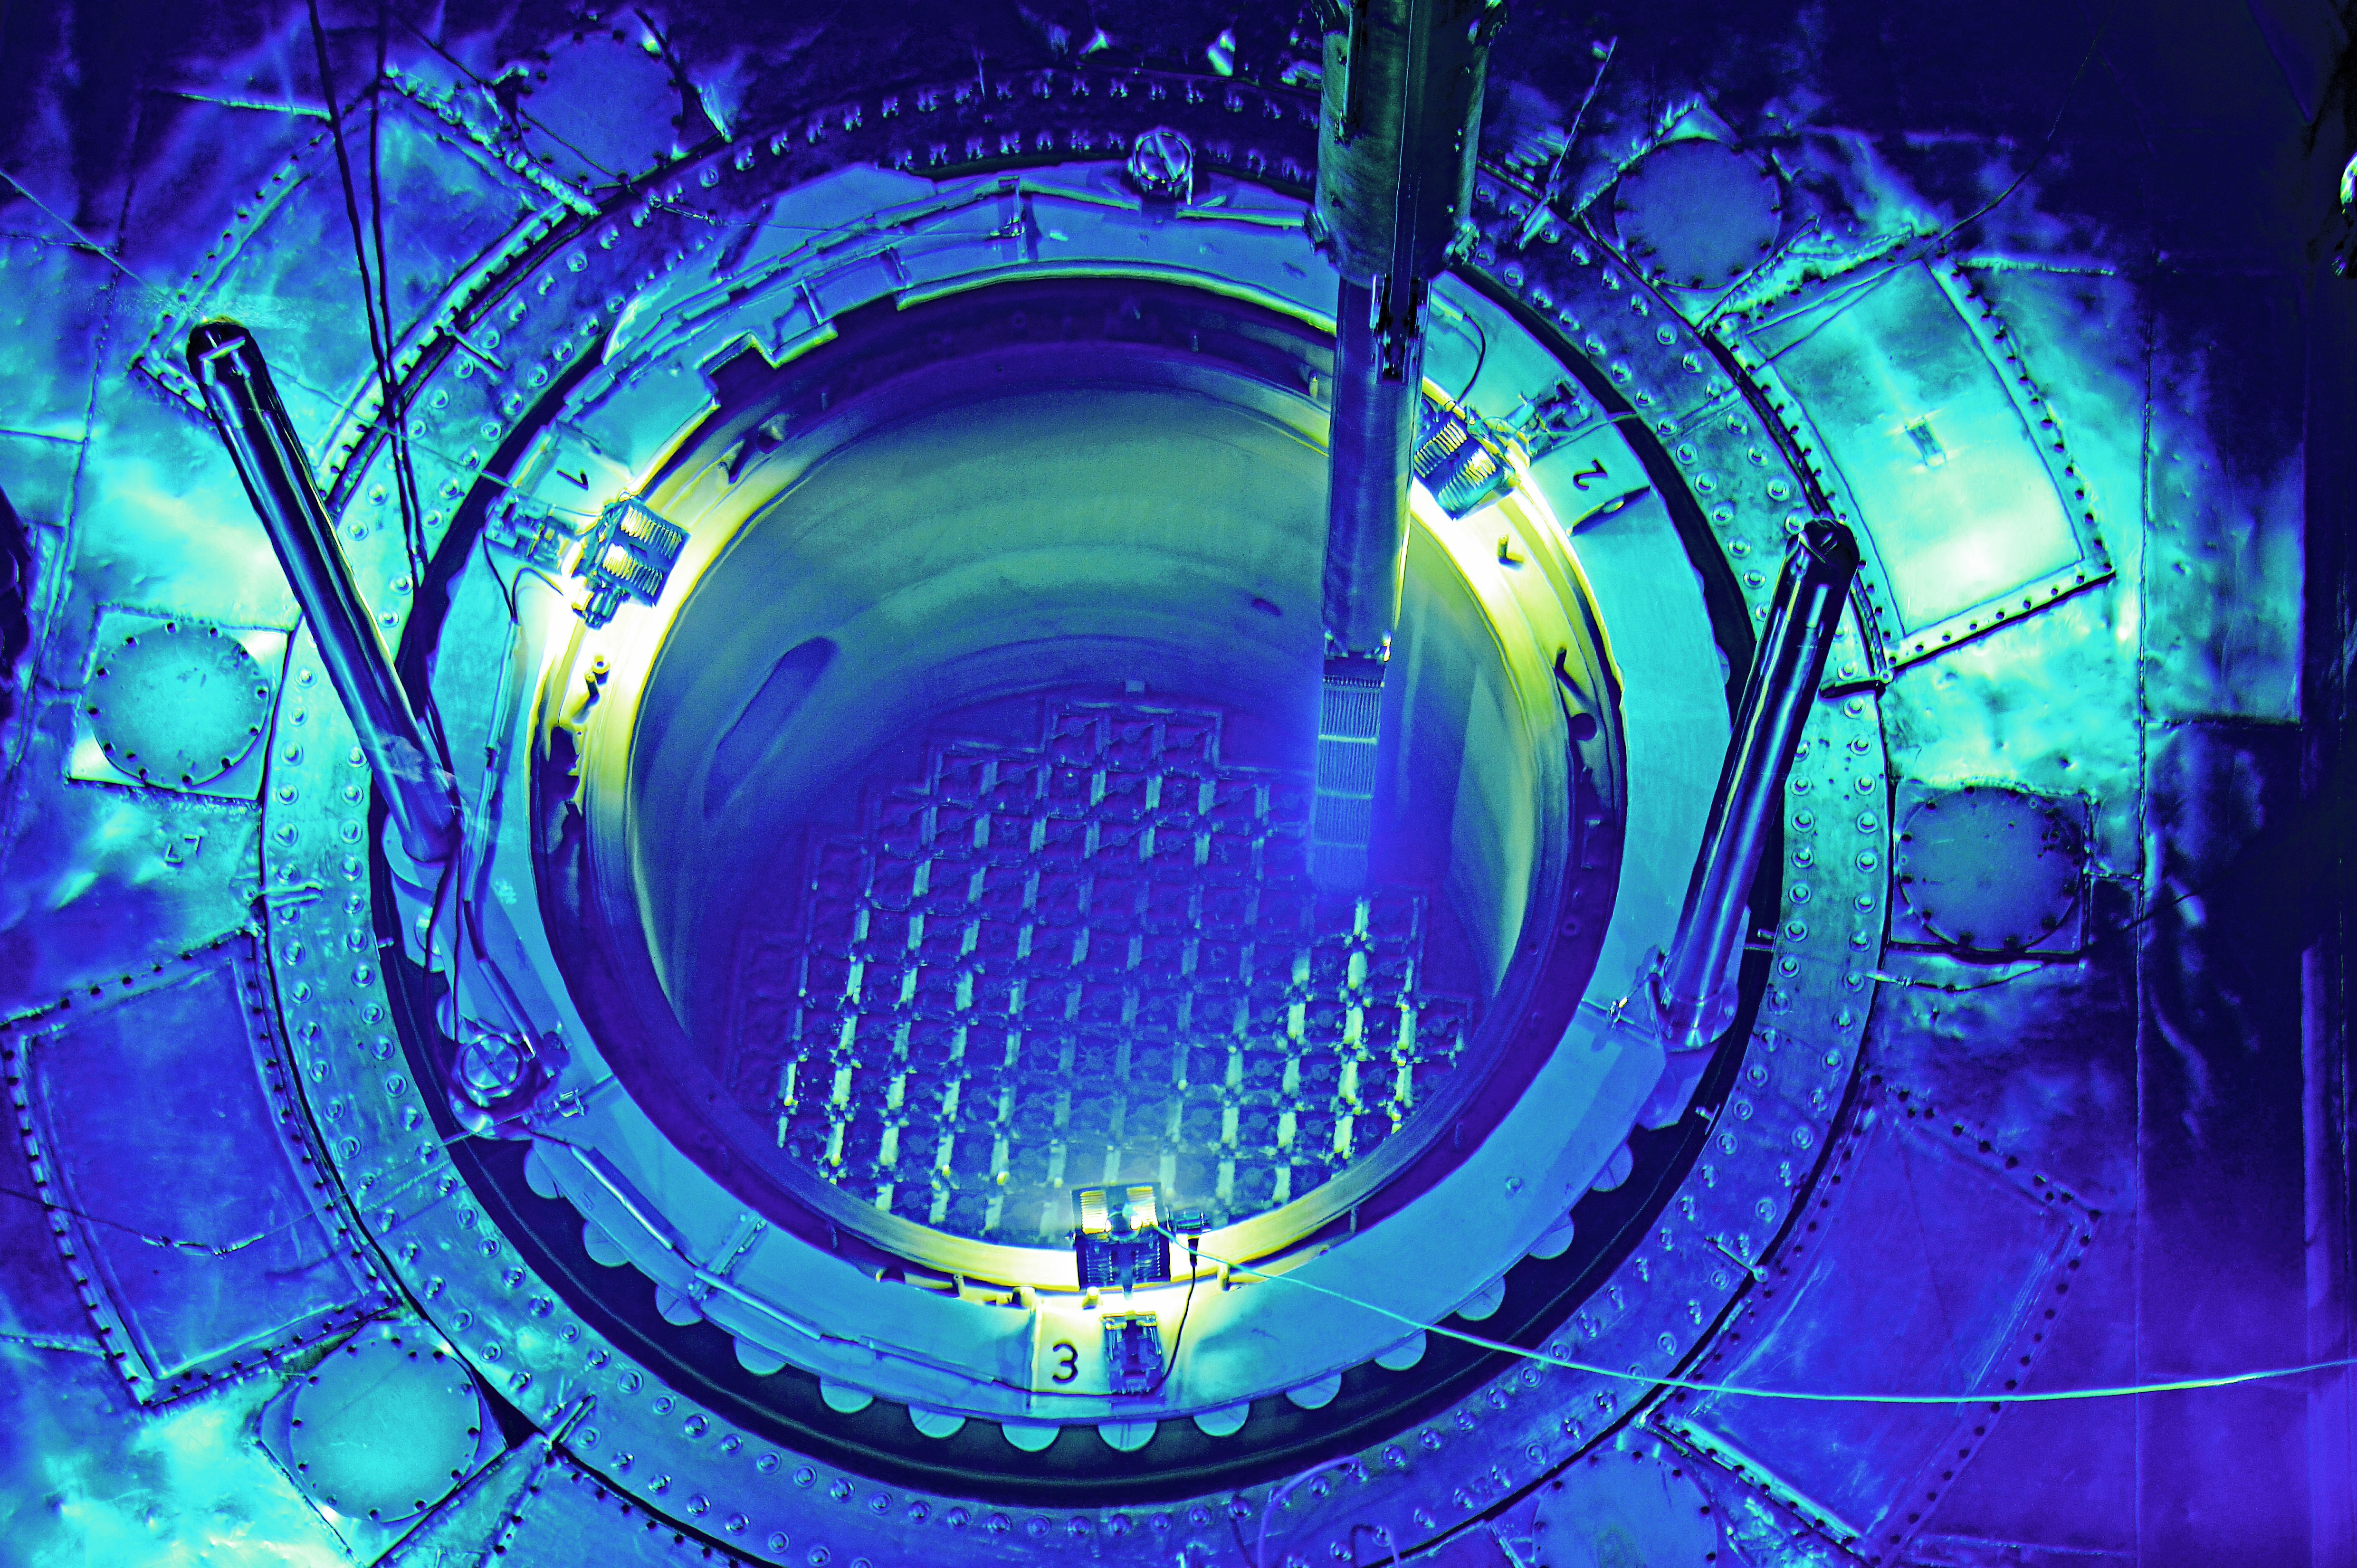 Das Reaktorbecken wurde für den Brennstoffwechsel mit Wasser geflutet und ein Element wird unter Wasser durch das Betriebspersonal (Operateure) mit dem Manipulator in den Reaktorkern eingesetzt. 